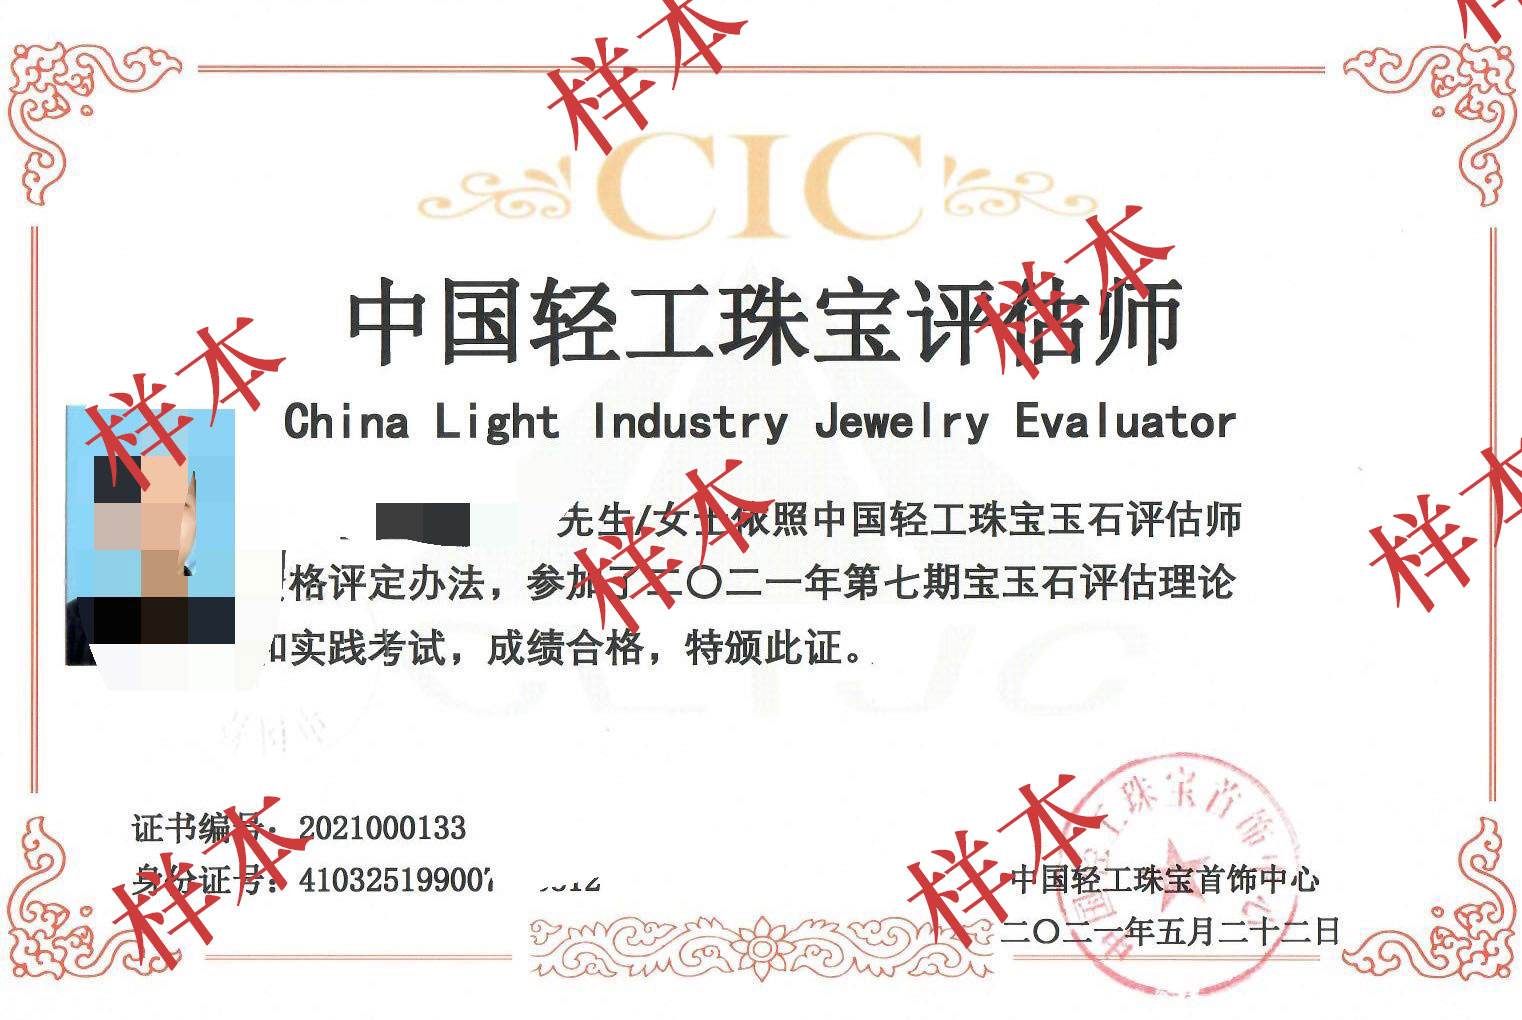 中国轻工珠宝首饰中心珠宝评估师课程——CIC珠宝评估师